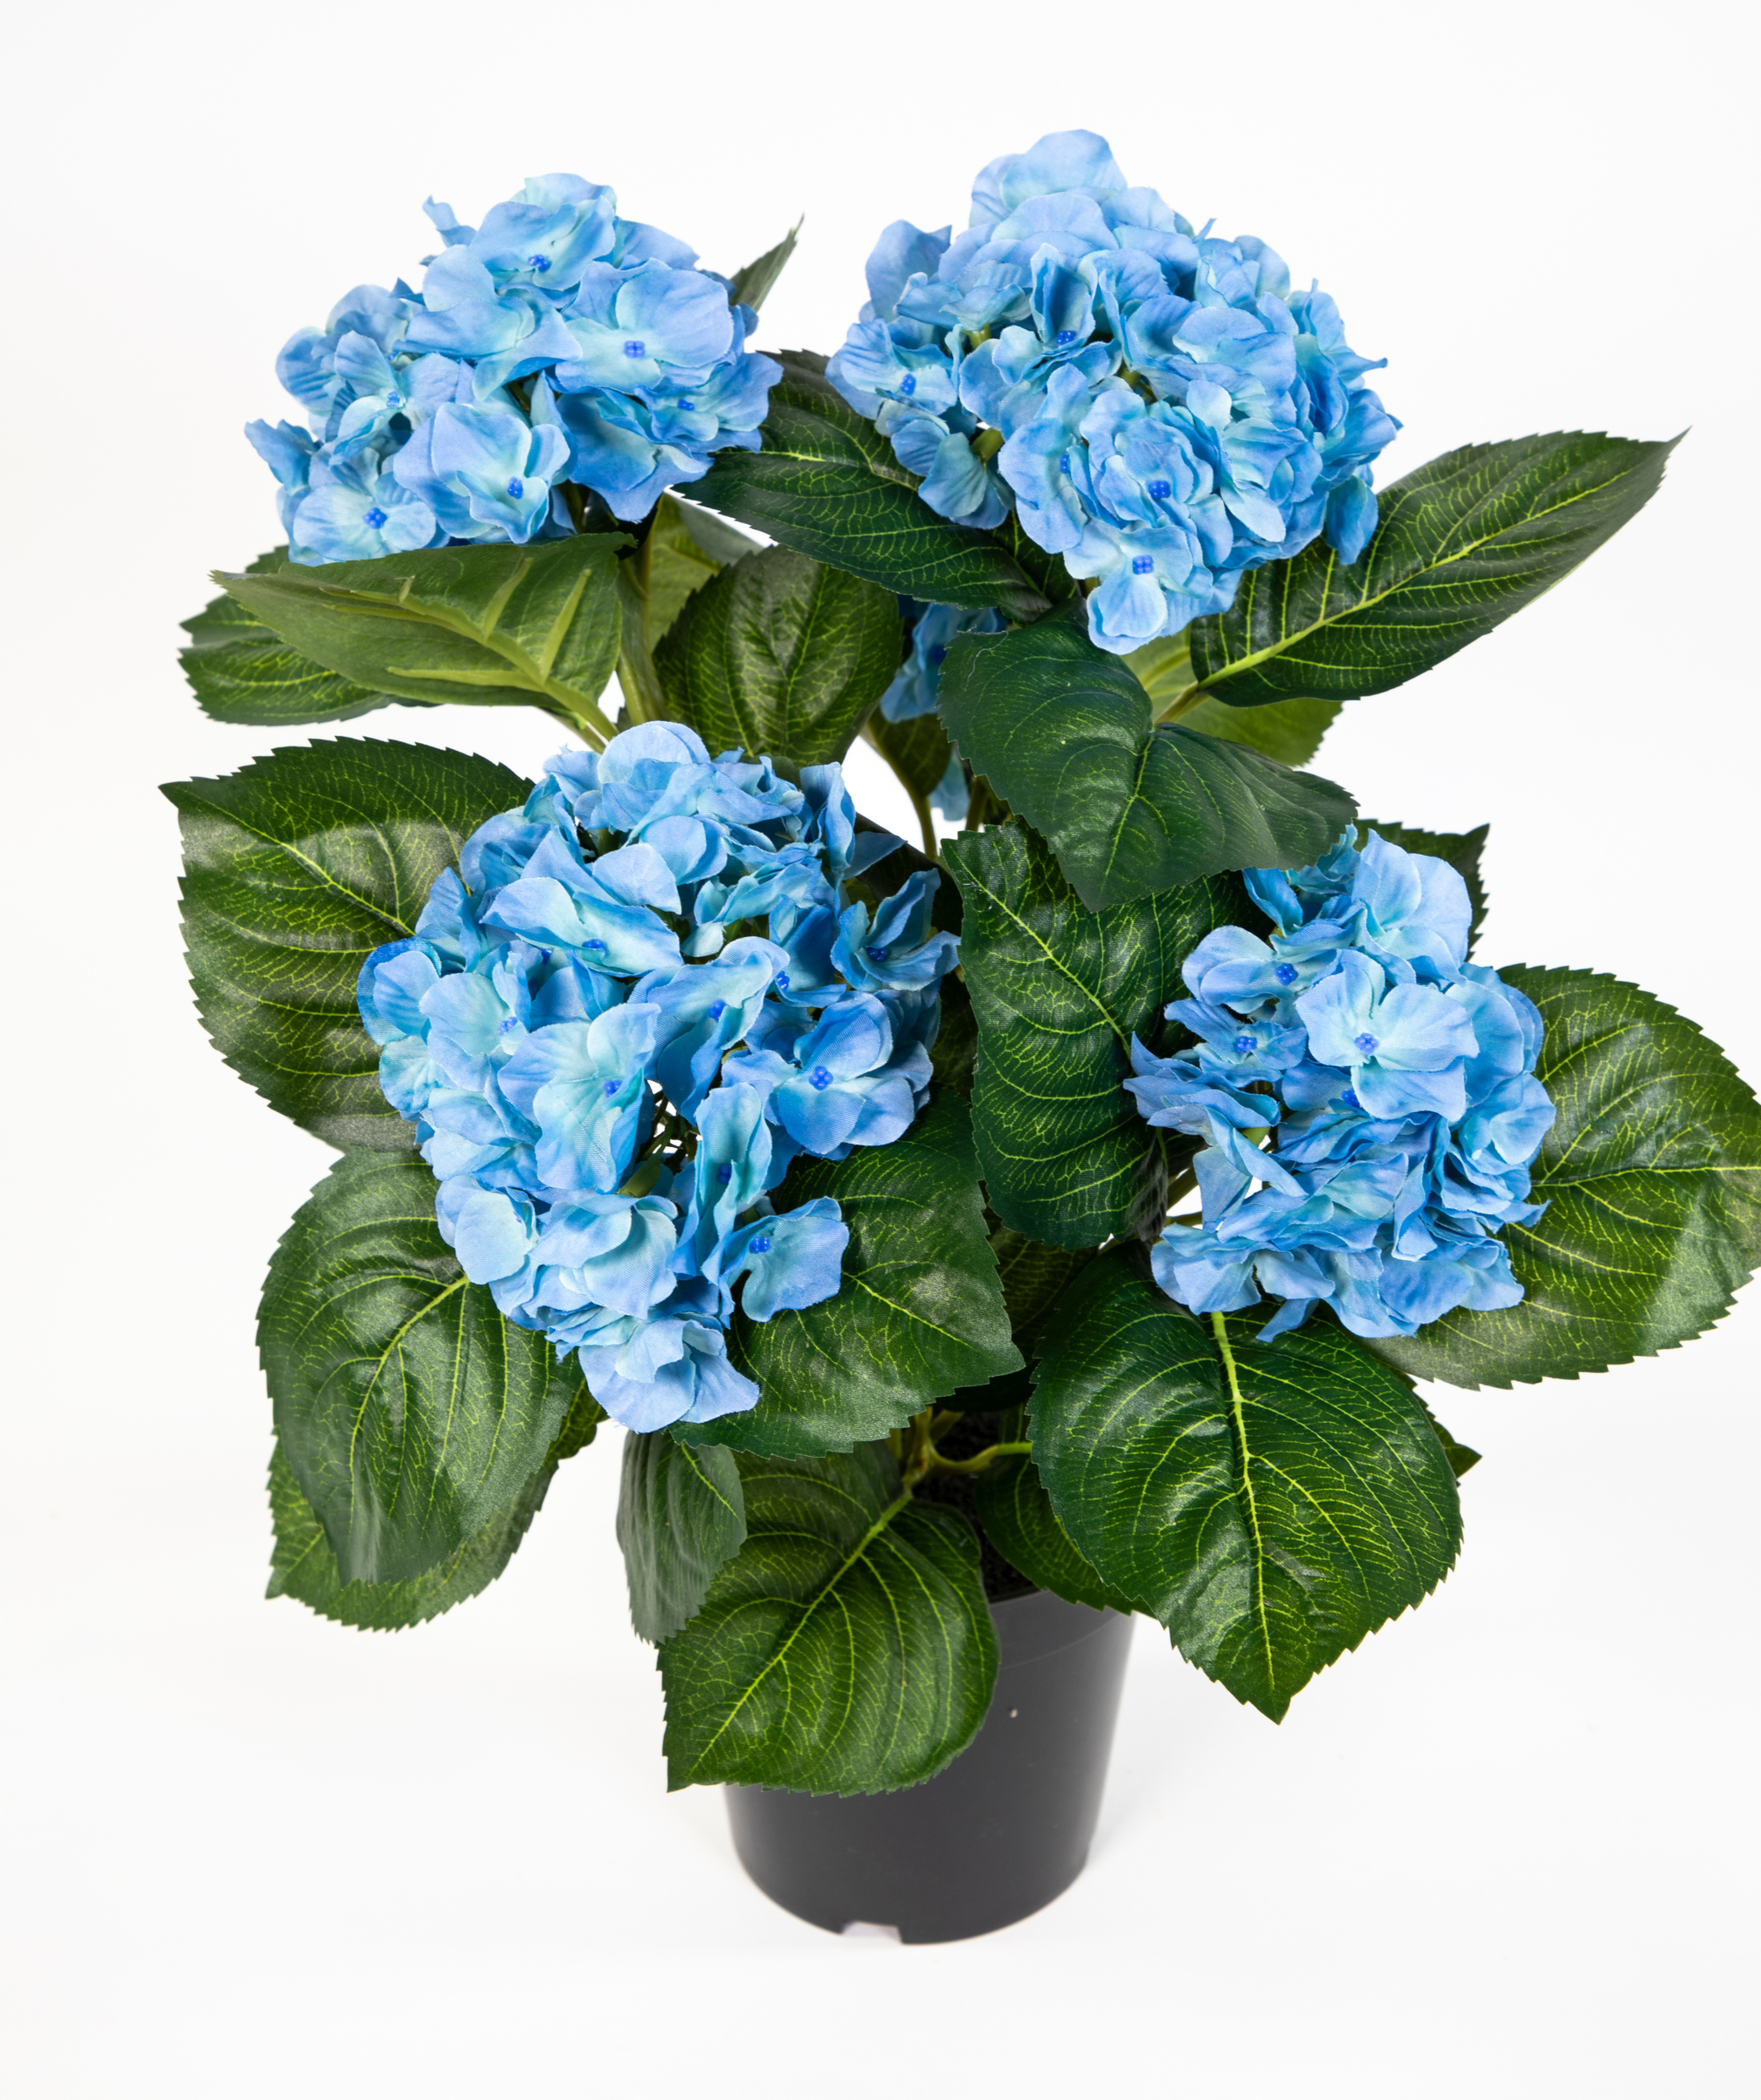 Hortensienbusch Deluxe 42cm blau im Topf LM Kunstpflanzen Kunstblume künstliche Hortensie Blumen